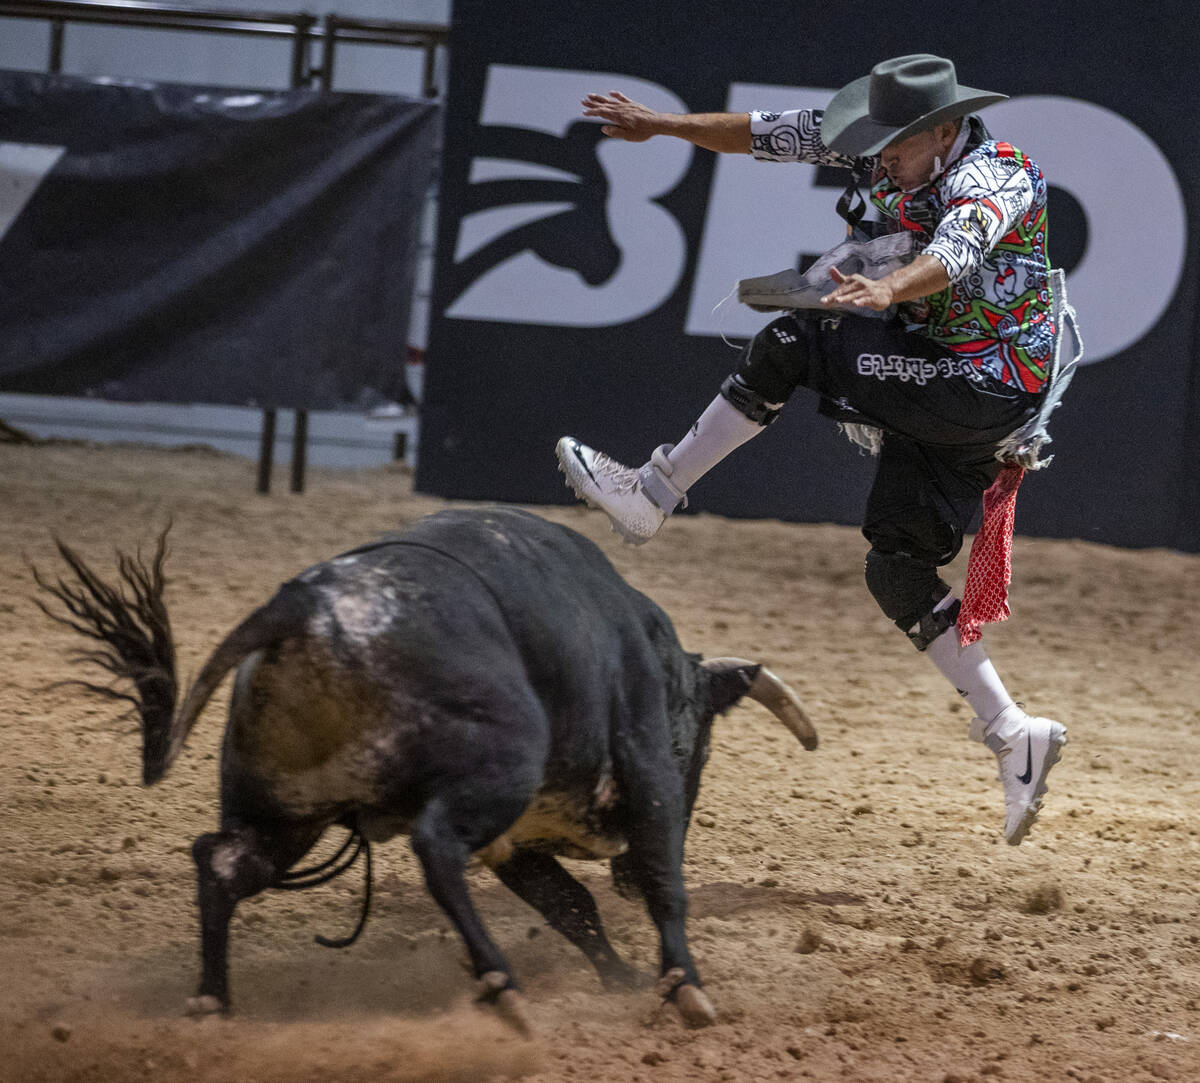 El competidor David Robles, de México, salta sobre un toro durante el evento Bullfighters Only ...